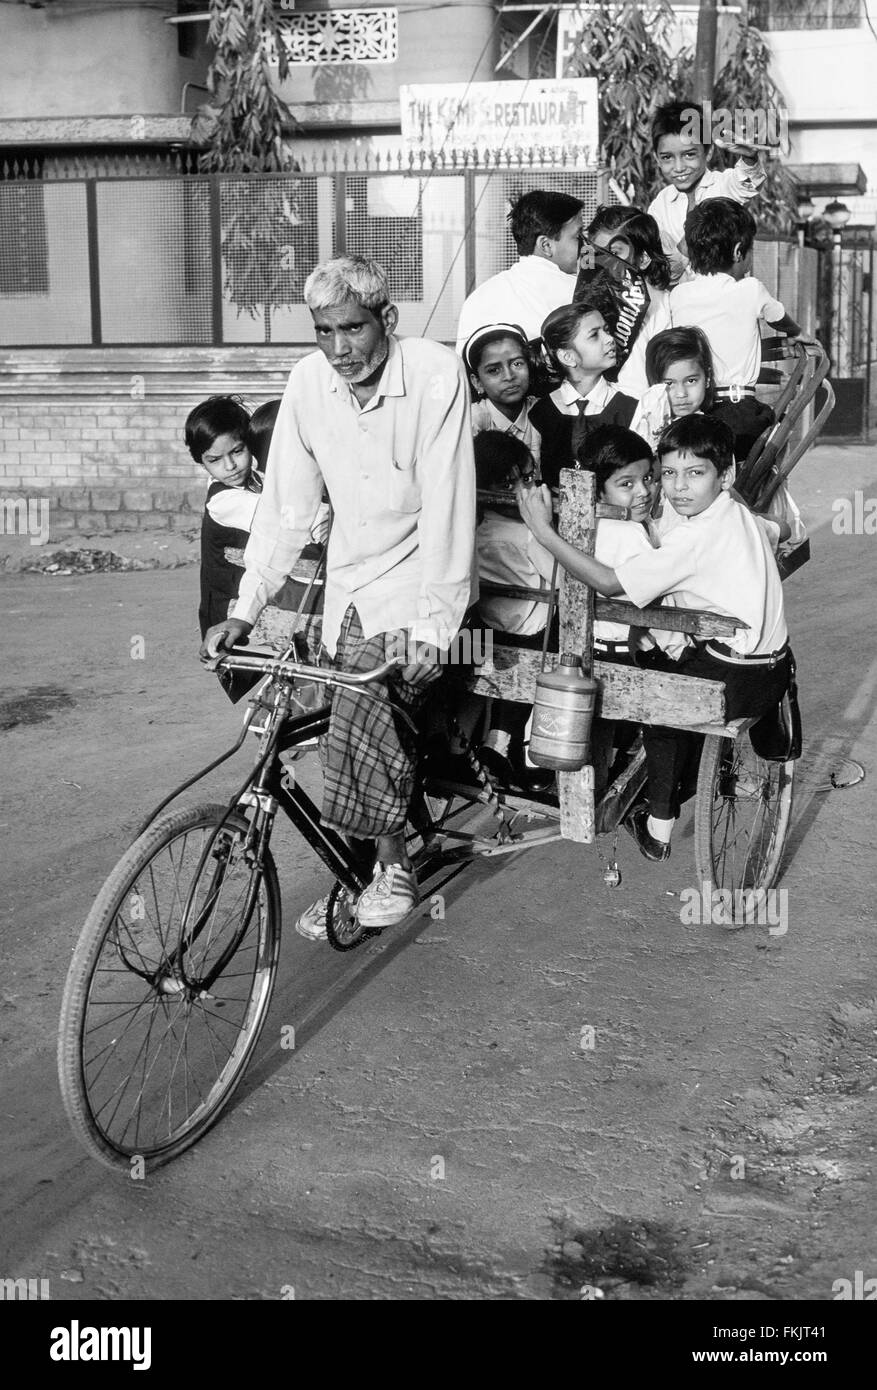 Vélo, pousse-pousse, rider, chauffeur, taxi, avec son tarif matin de grand groupe, de l'école, les enfants, qu'il prend à l'école.Varanasi, Inde Banque D'Images